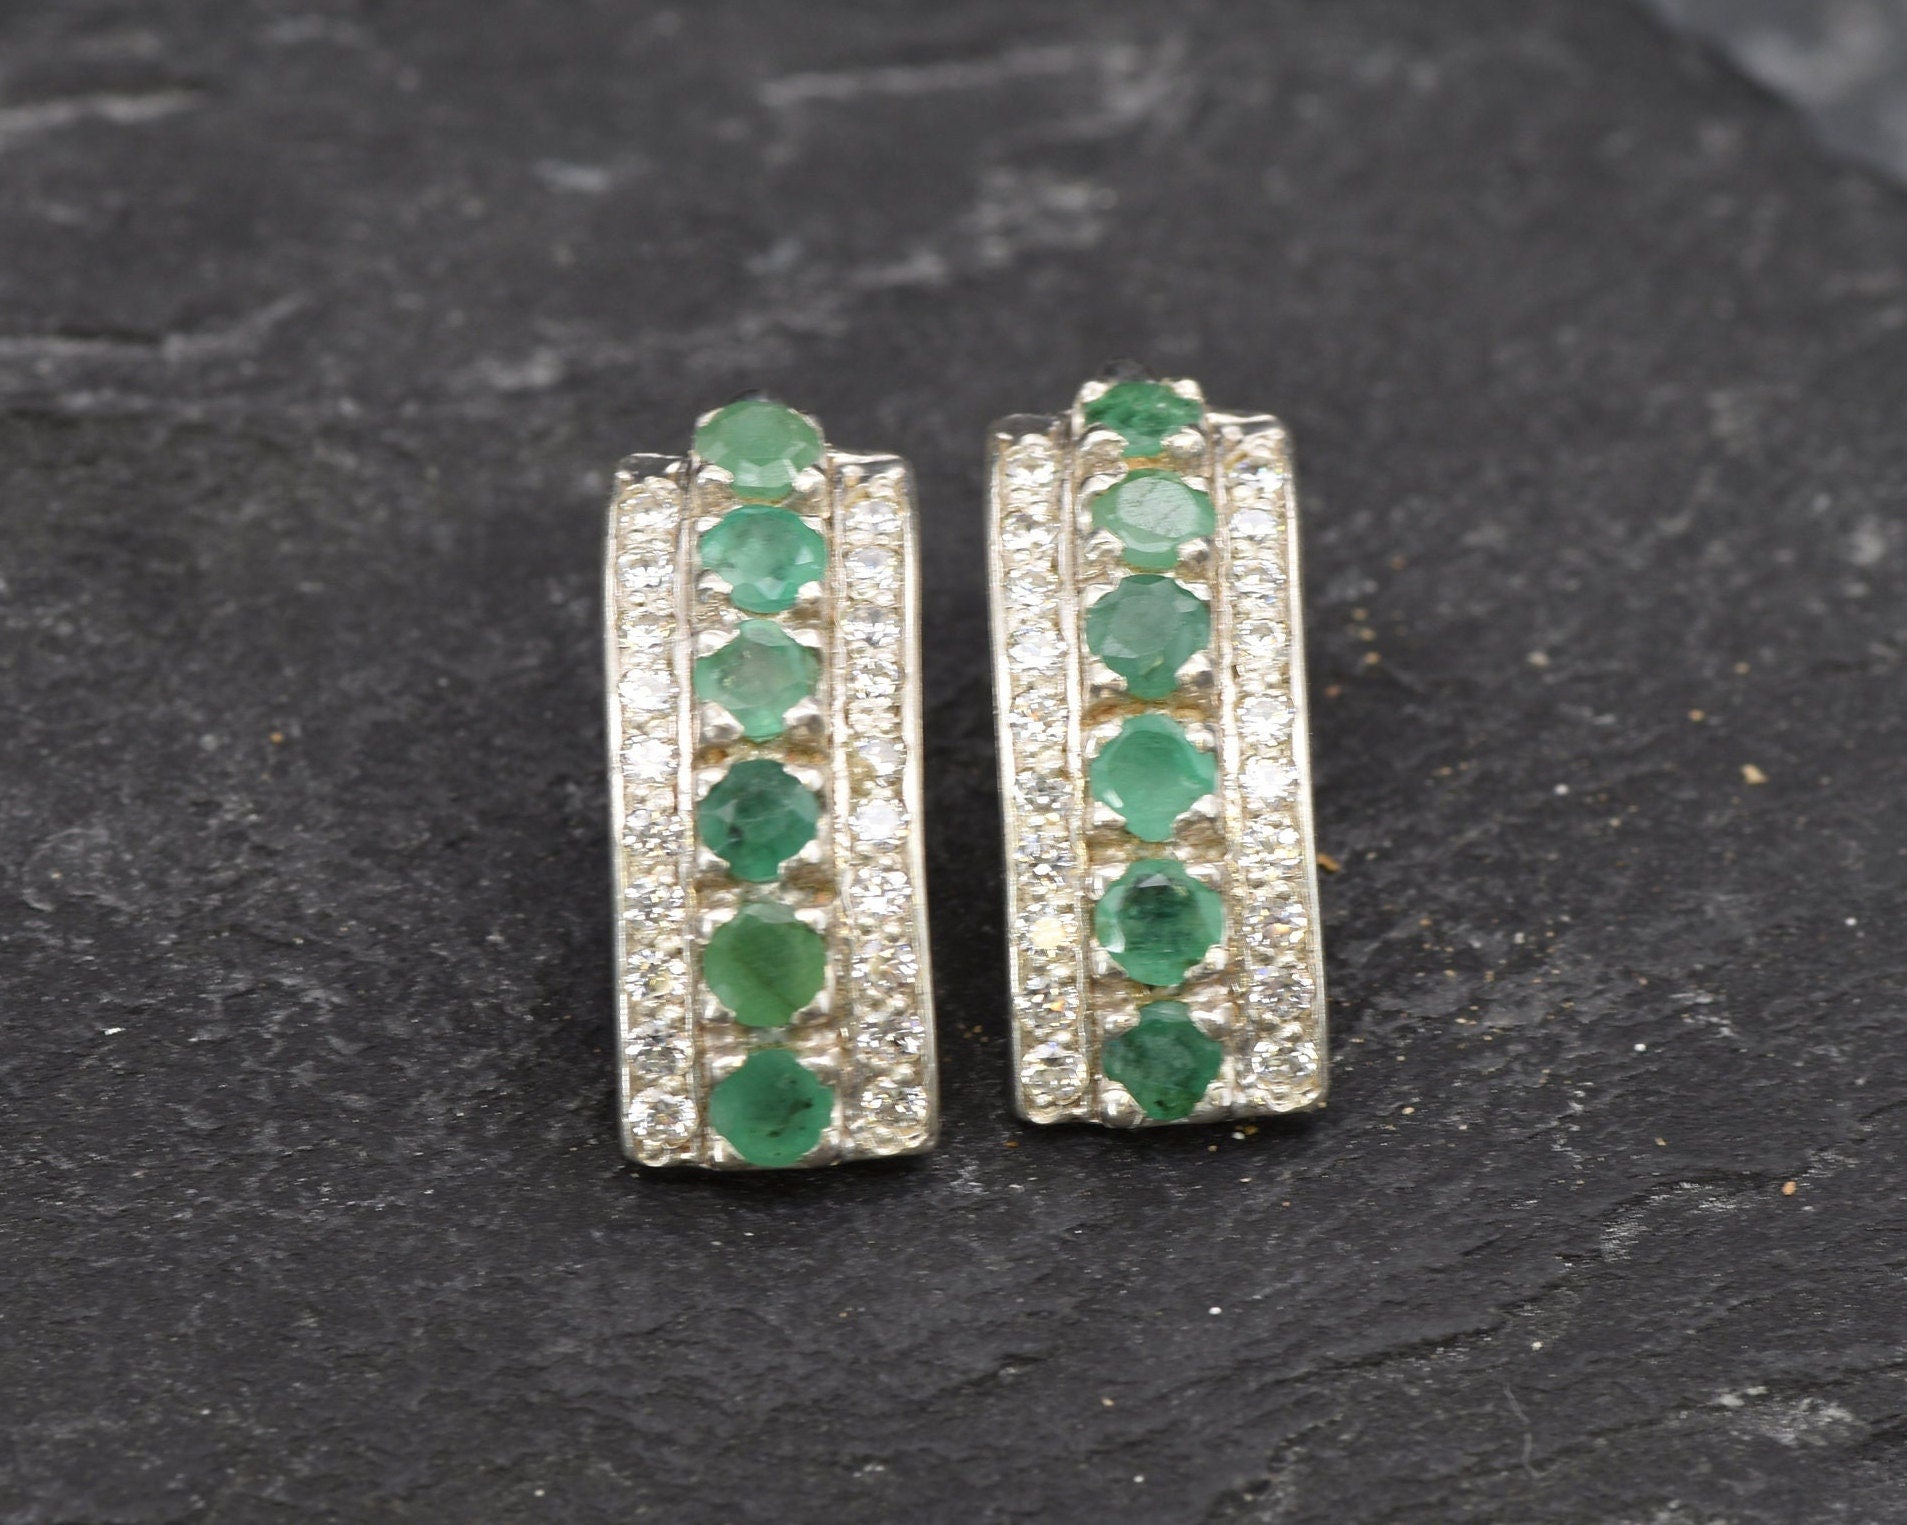 Emerald Earrings, Natural Emerald, May Birthstone, Triple Earrings, Green Stone Earrings, Vintage Earrings, Silver Earrings, 925 Silver